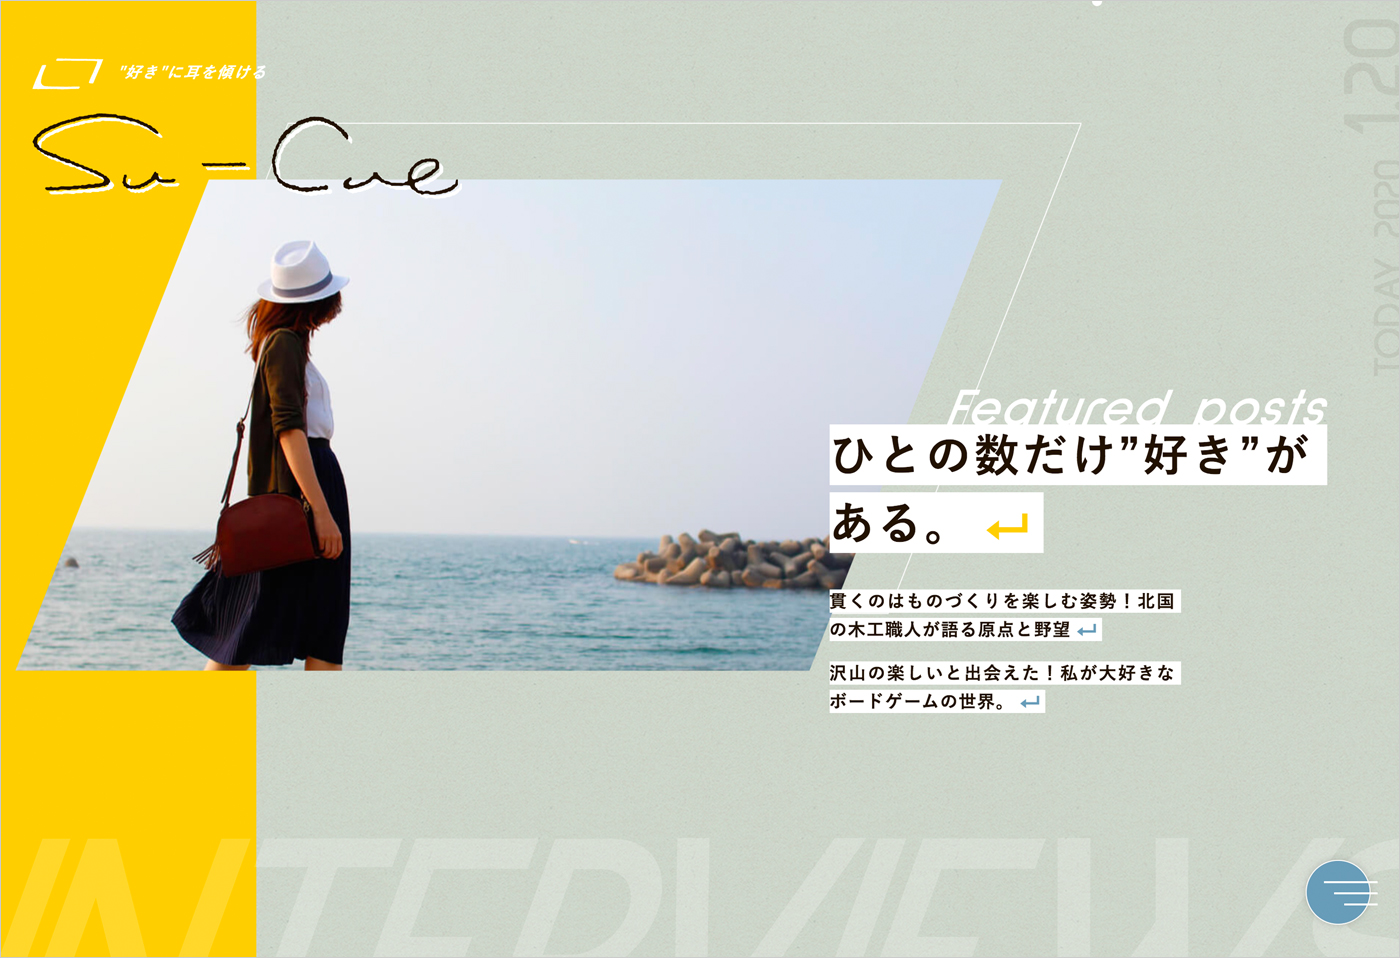 Su-Cue | “好き”に耳を傾け発信するWebマガジンウェブサイトの画面キャプチャ画像